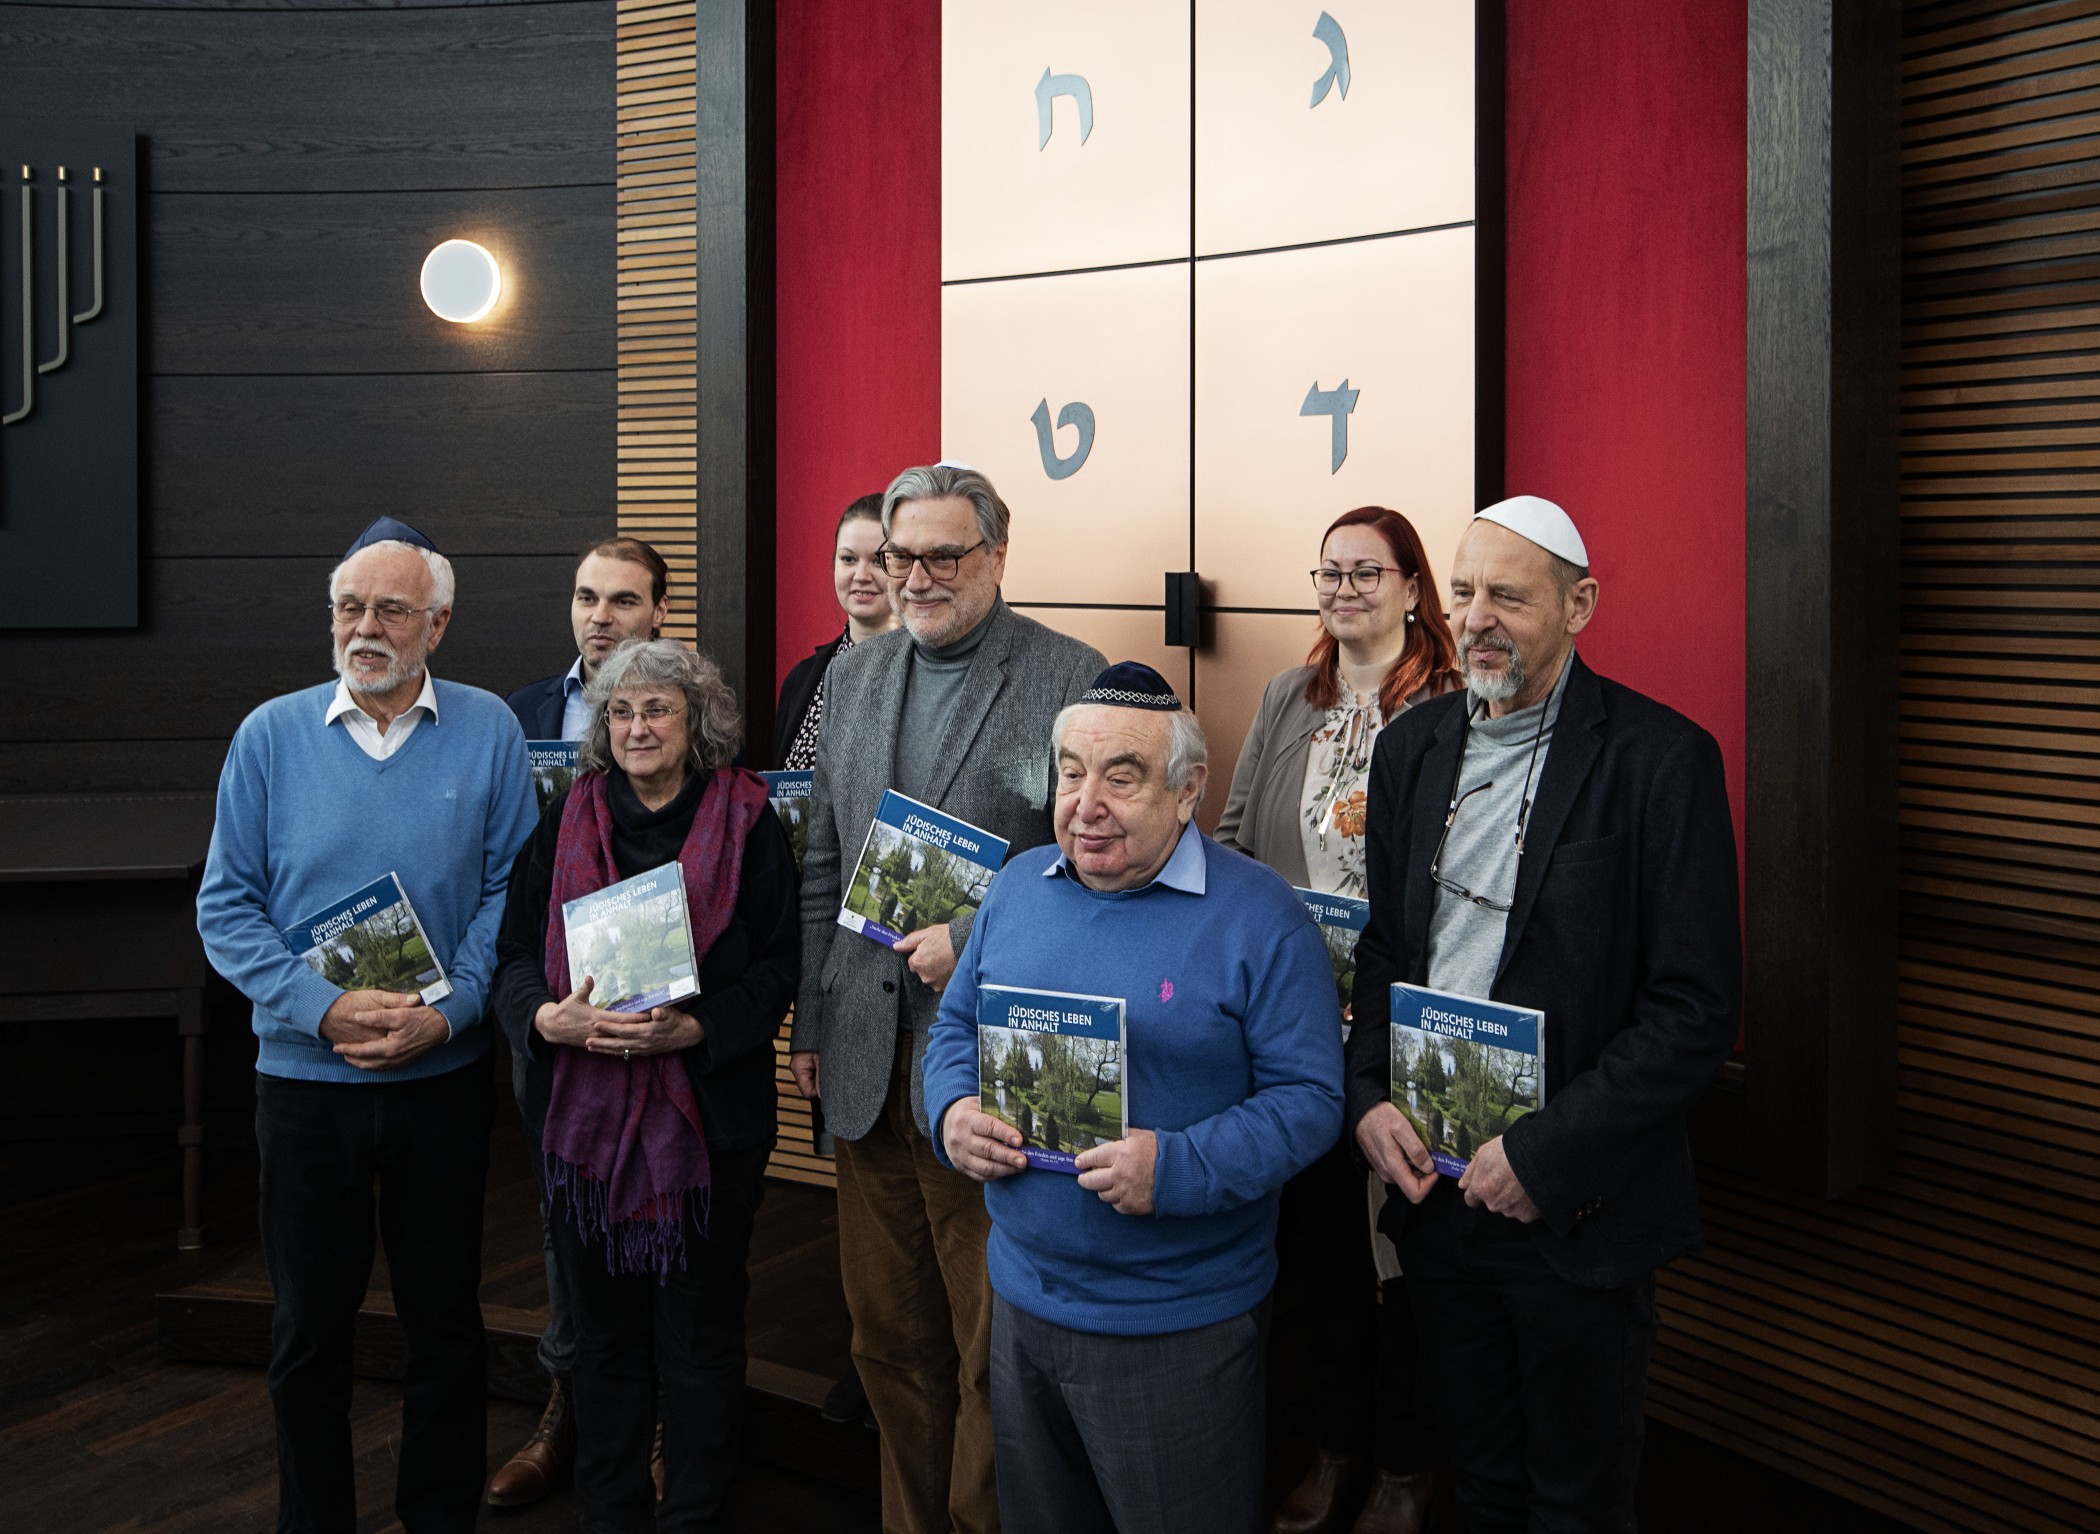 Auf dem Bild sind 8 Personen zu sehen. Drei Frauen und 5 Männer. Die Männer tragen eine Kippa. Alle stehen vor einer Wand mit hebräischen Buchstaben und halten ein Buch in der Hand. 